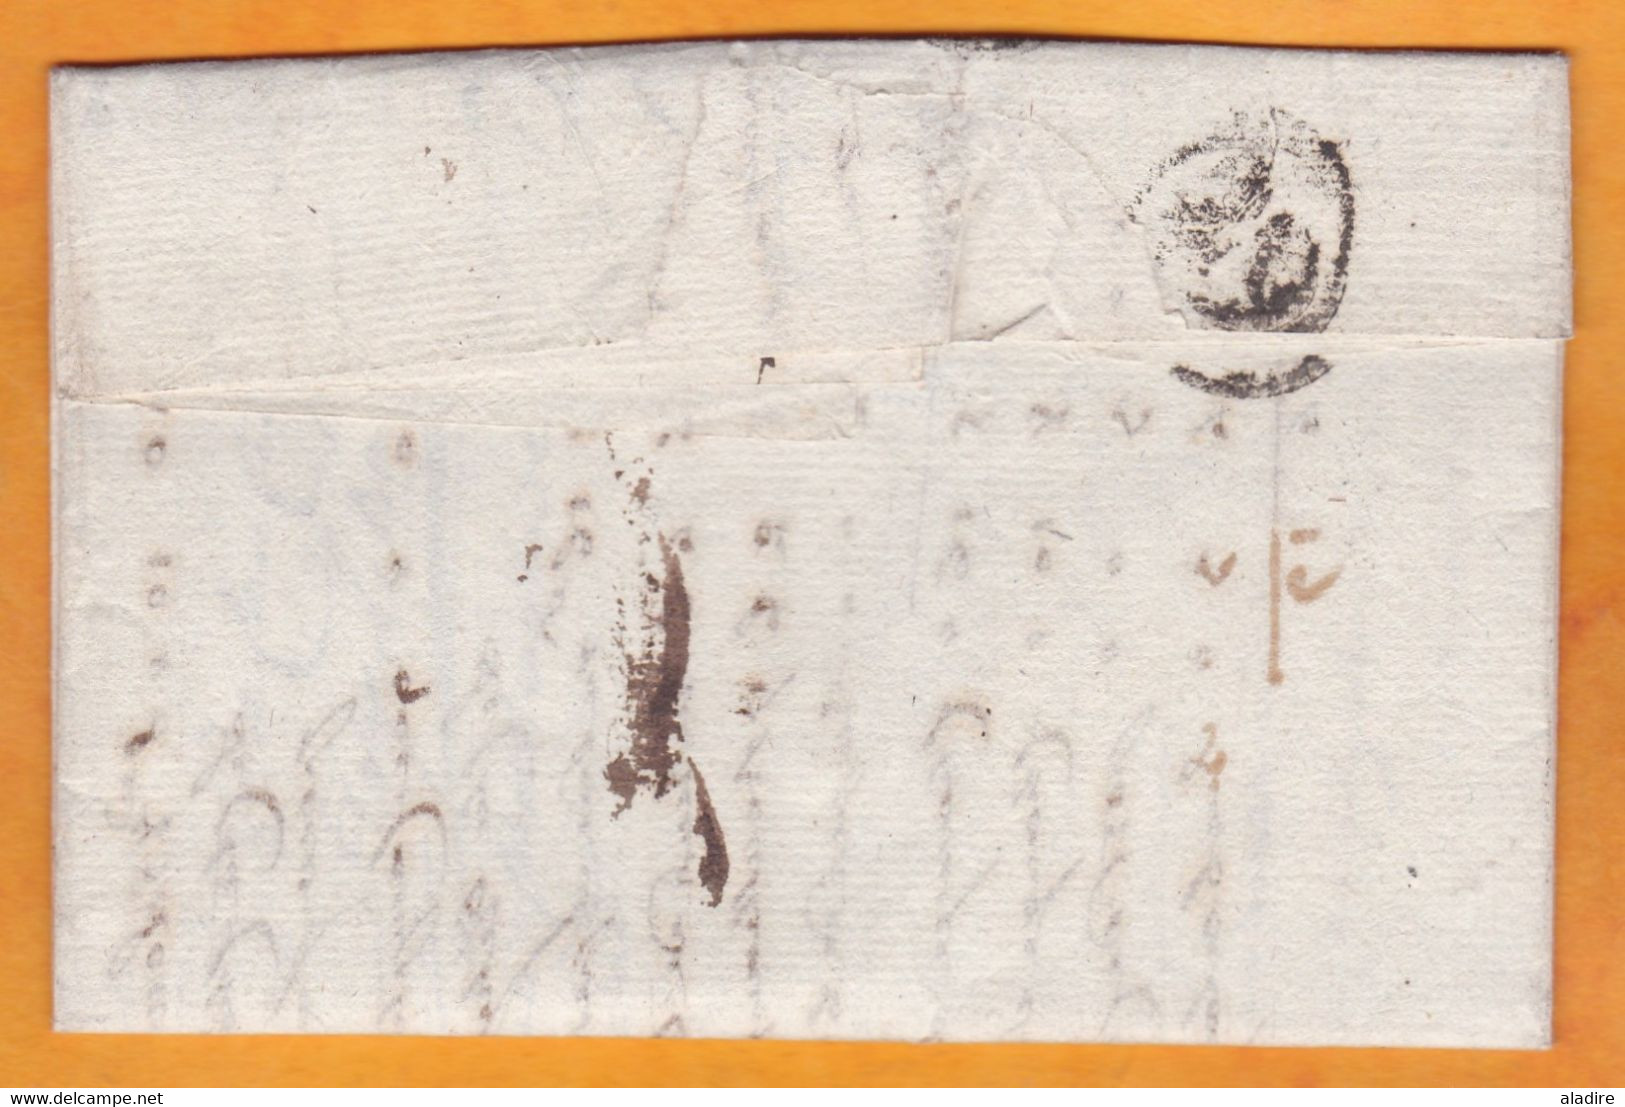 1799 - An 6 - Marque Postale 74 ROUEN Sur Lettre Pliée Avec Correspondance De 3 P Vers PARIS - T6 - 1701-1800: Precursors XVIII